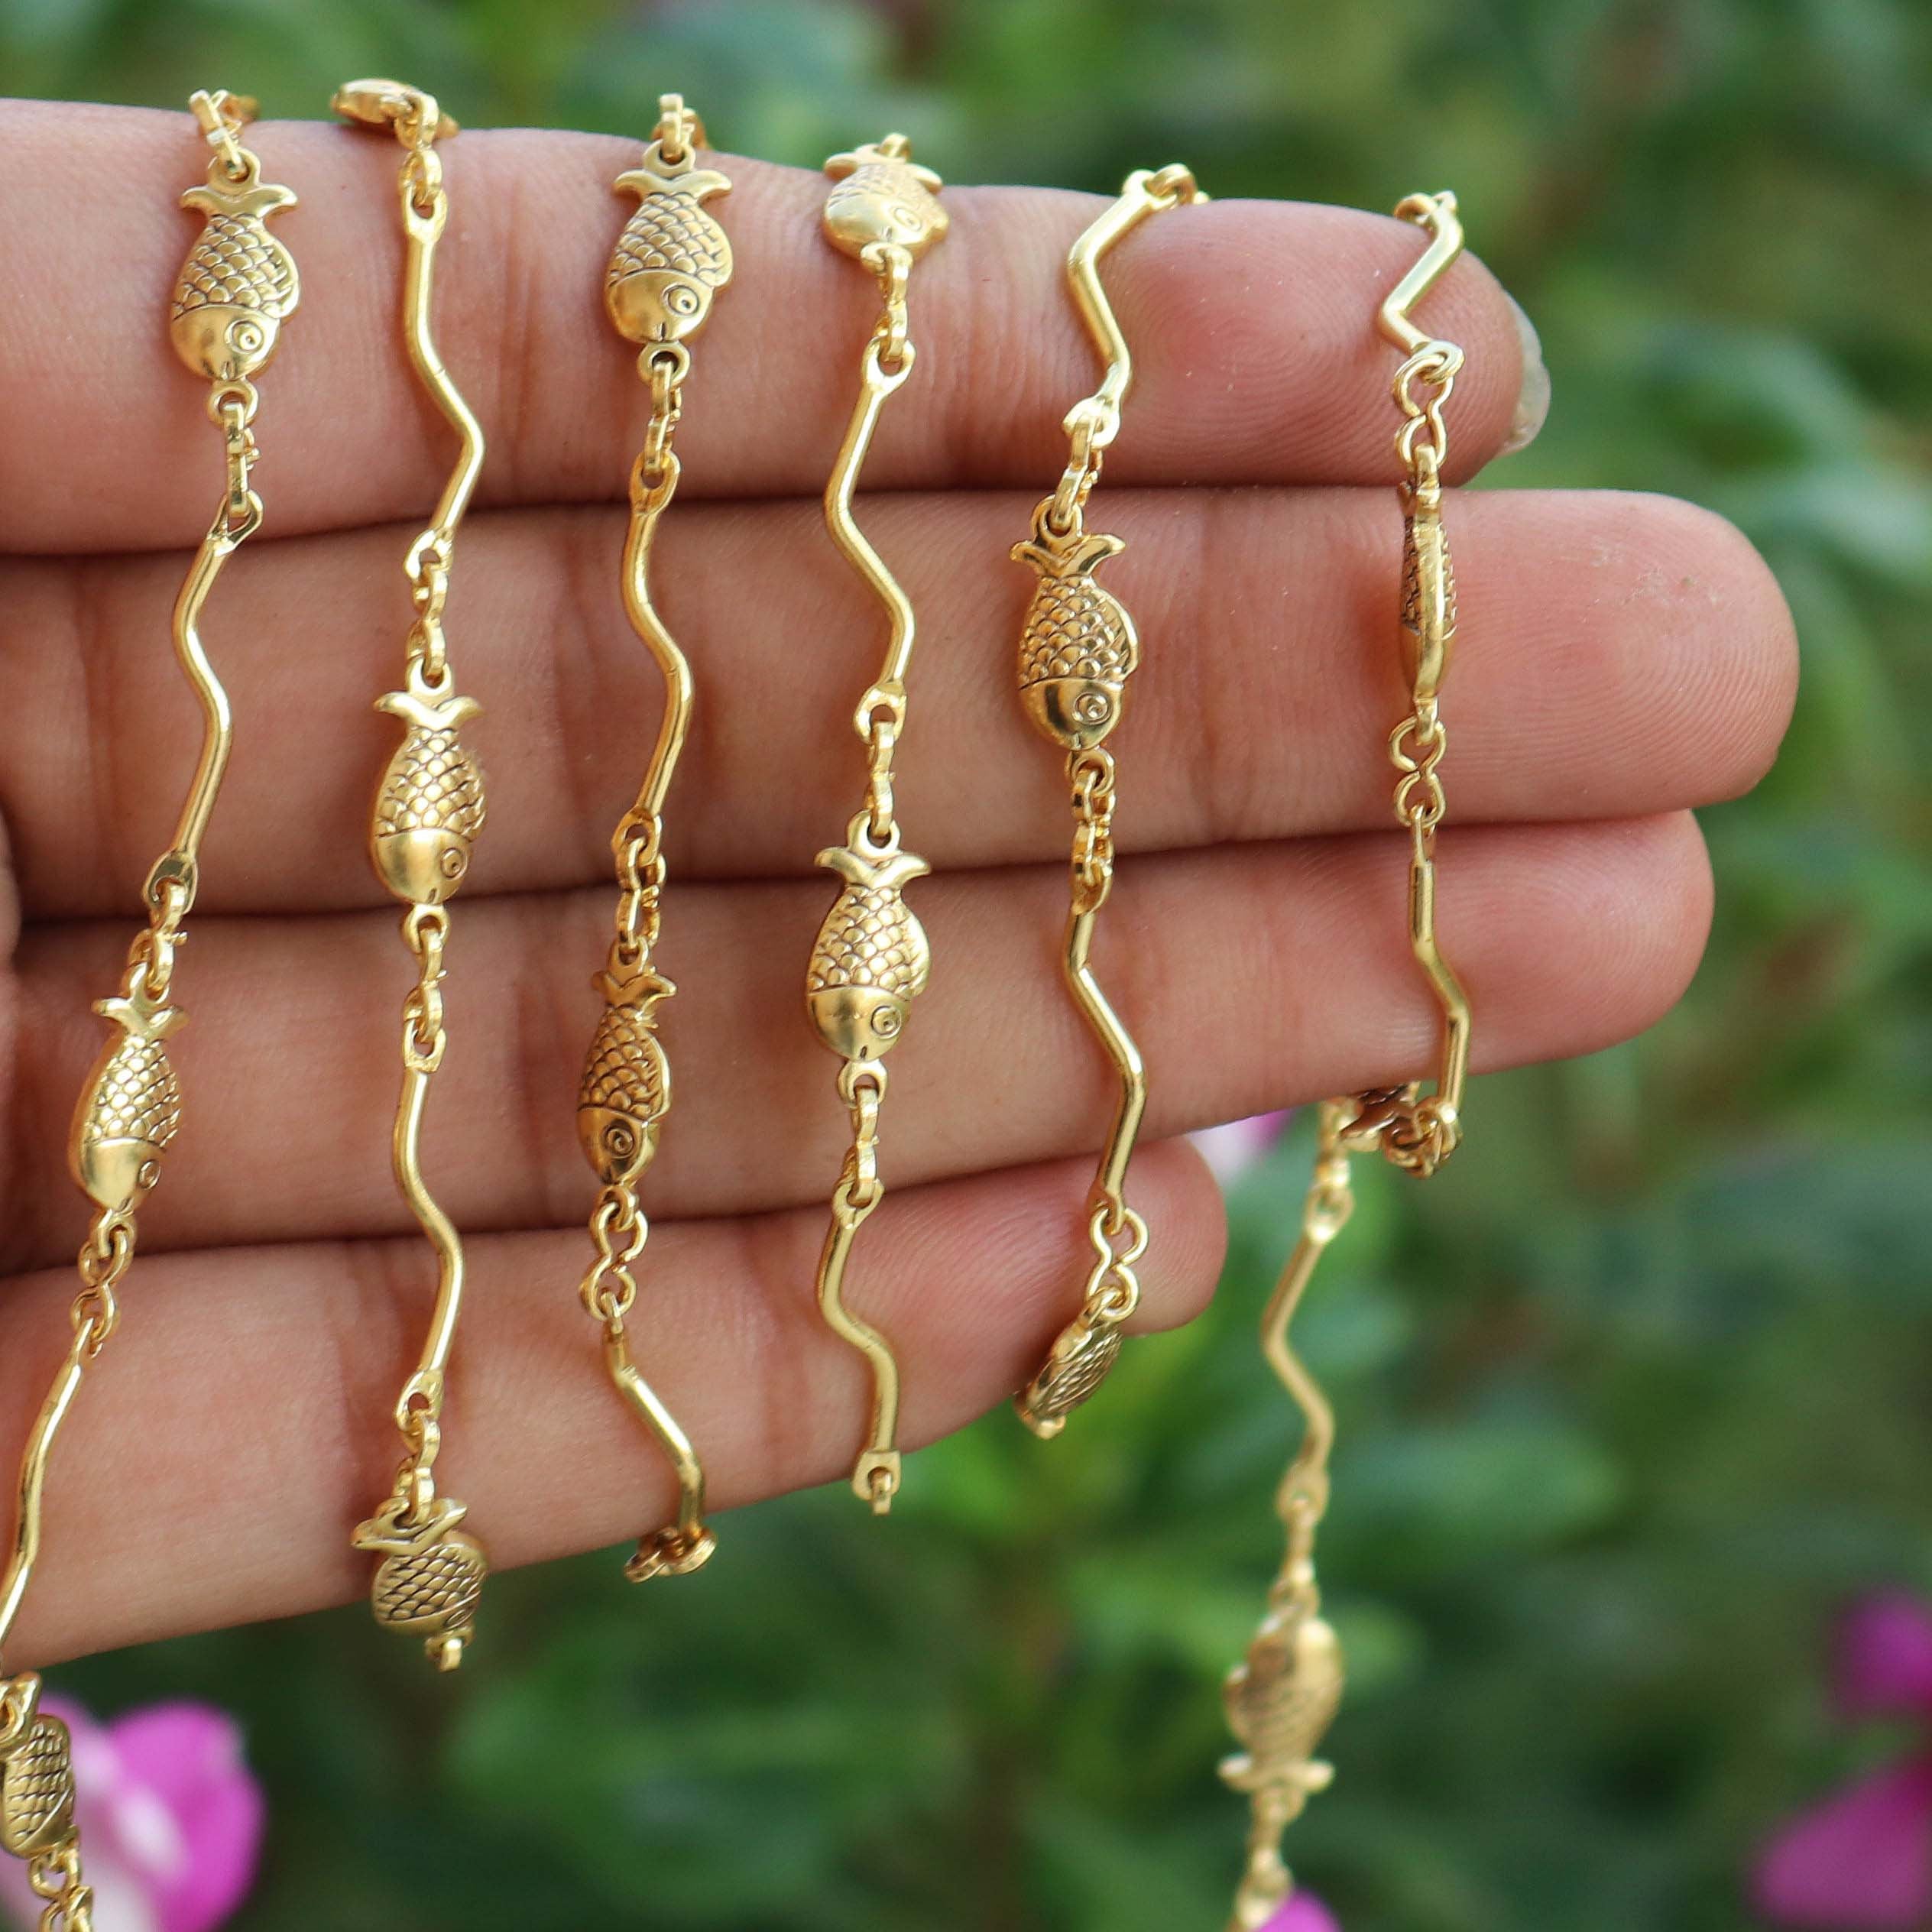 22K Gold Drop Earrings For Women - 235-GER16138 in 3.250 Grams